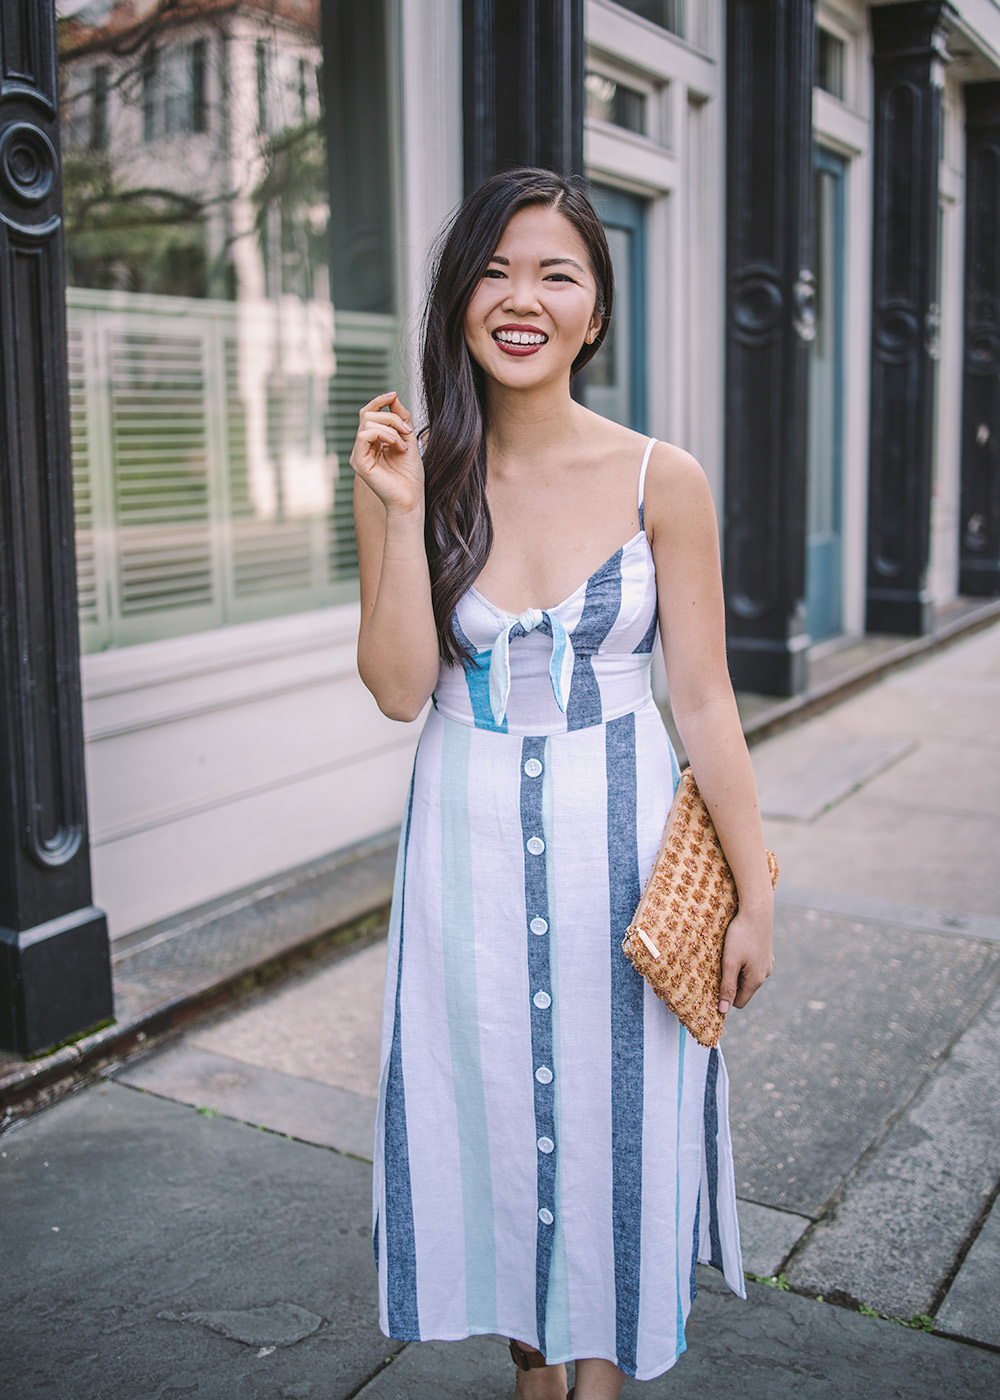 Summer Dresses / Blue & White Striped Linen Dress